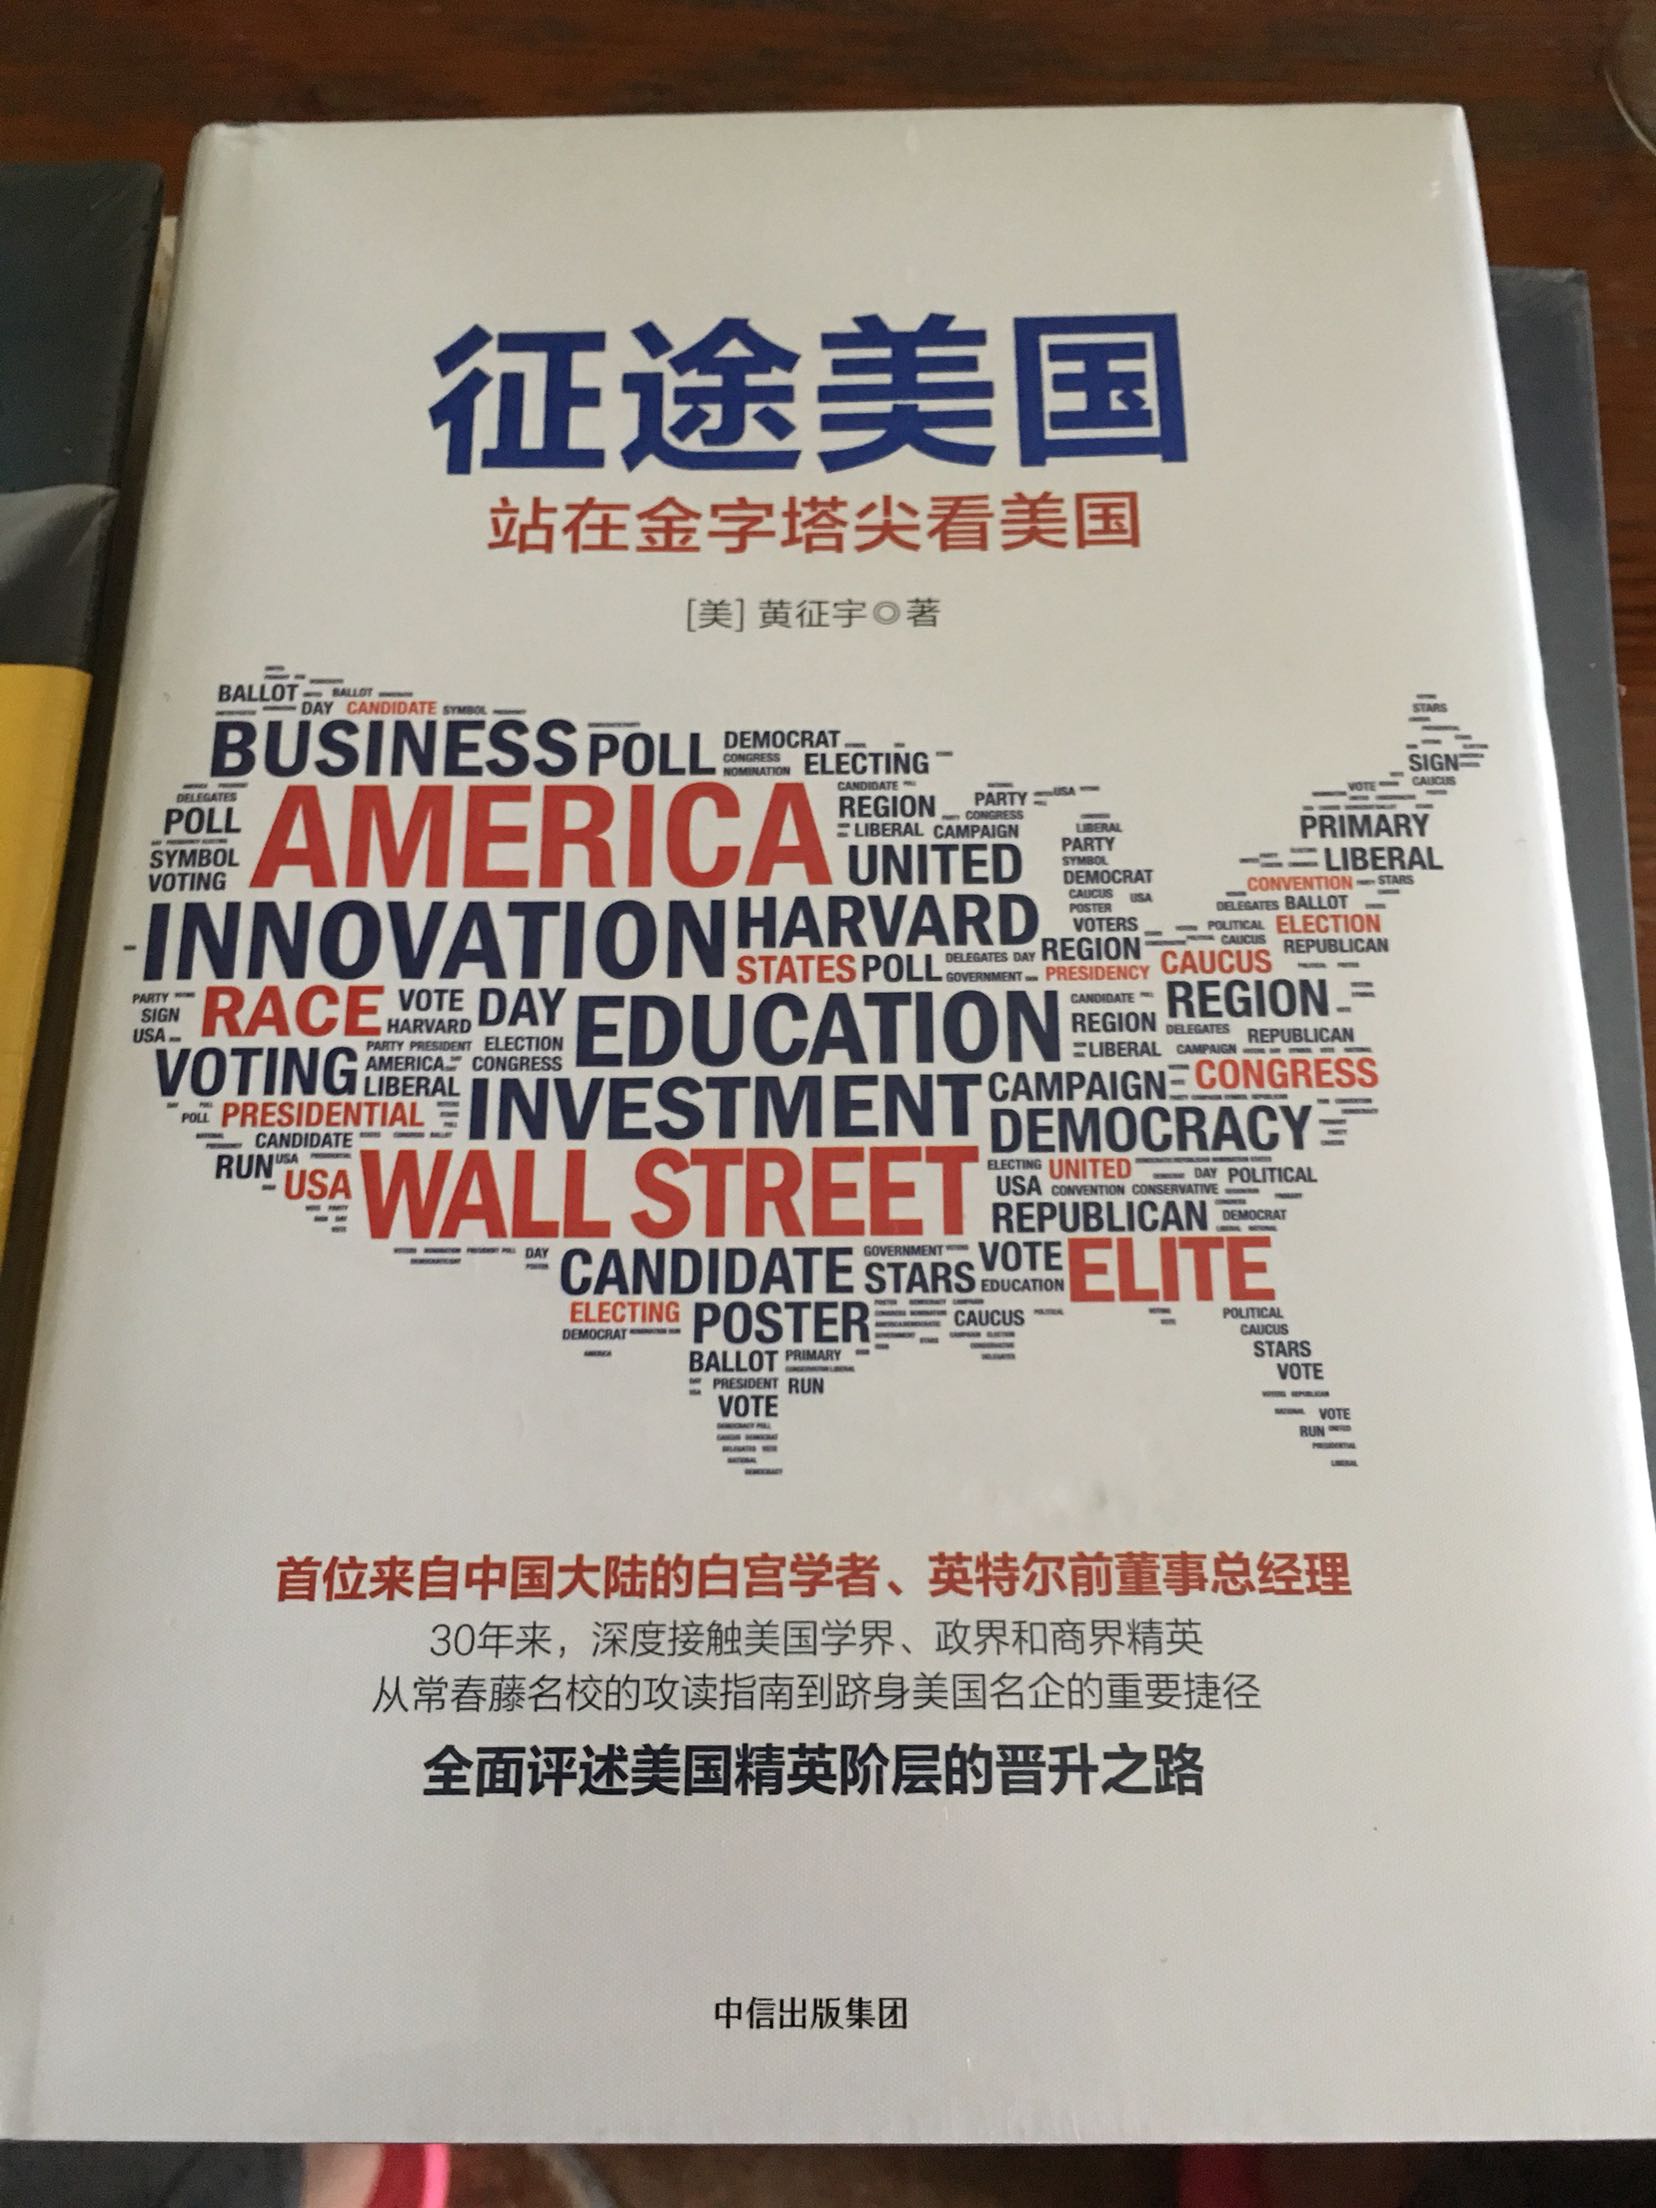 通过这本书学习中美文化，从另一个角度看美国，增长知识，喜欢。